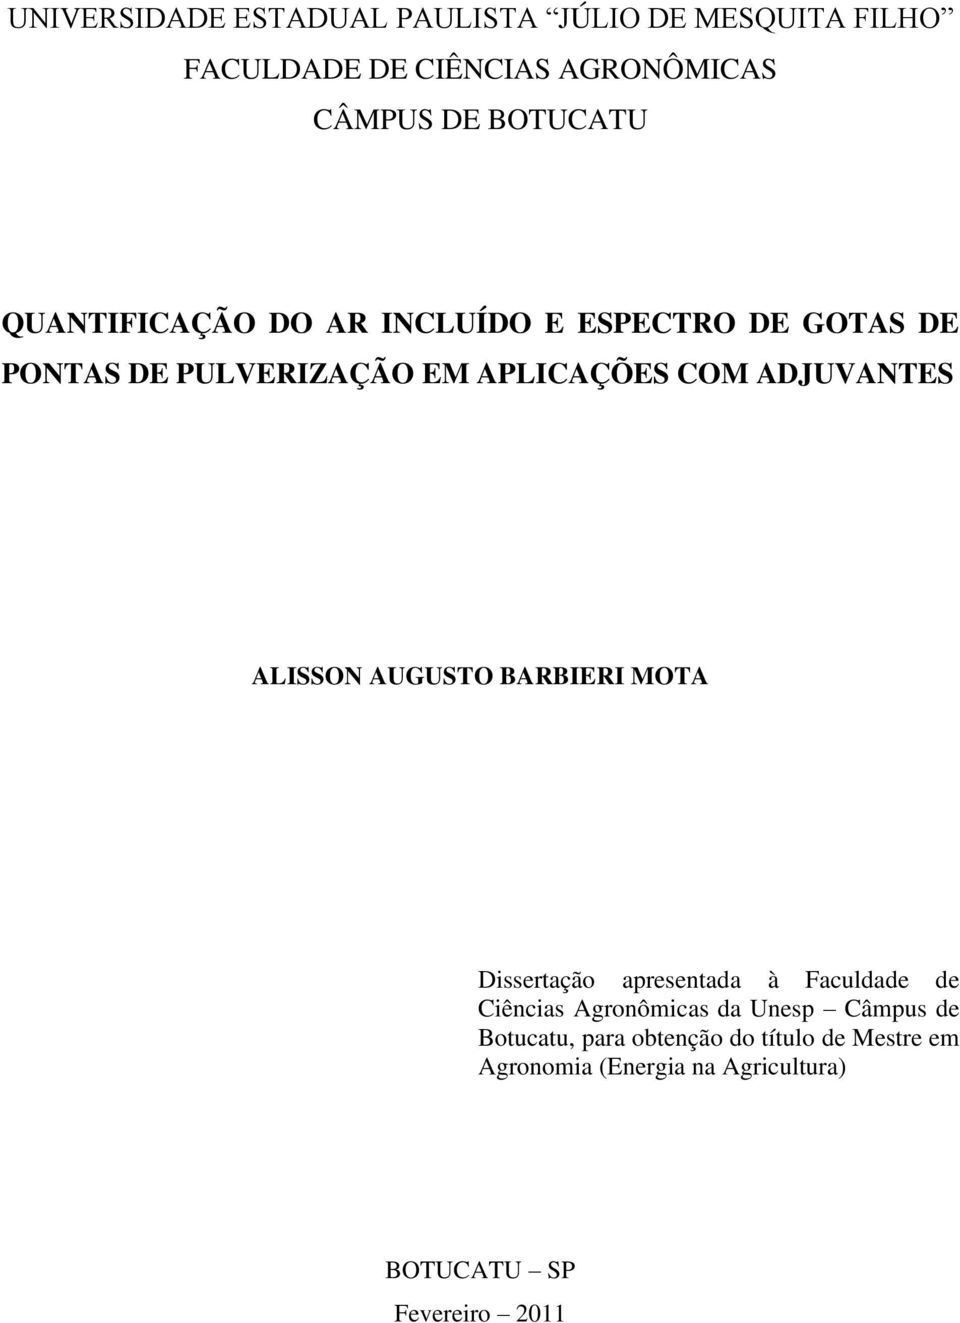 ALISSON AUGUSTO BARBIERI MOTA Dissertação apresentada à Faculdade de Ciências Agronômicas da Unesp Câmpus